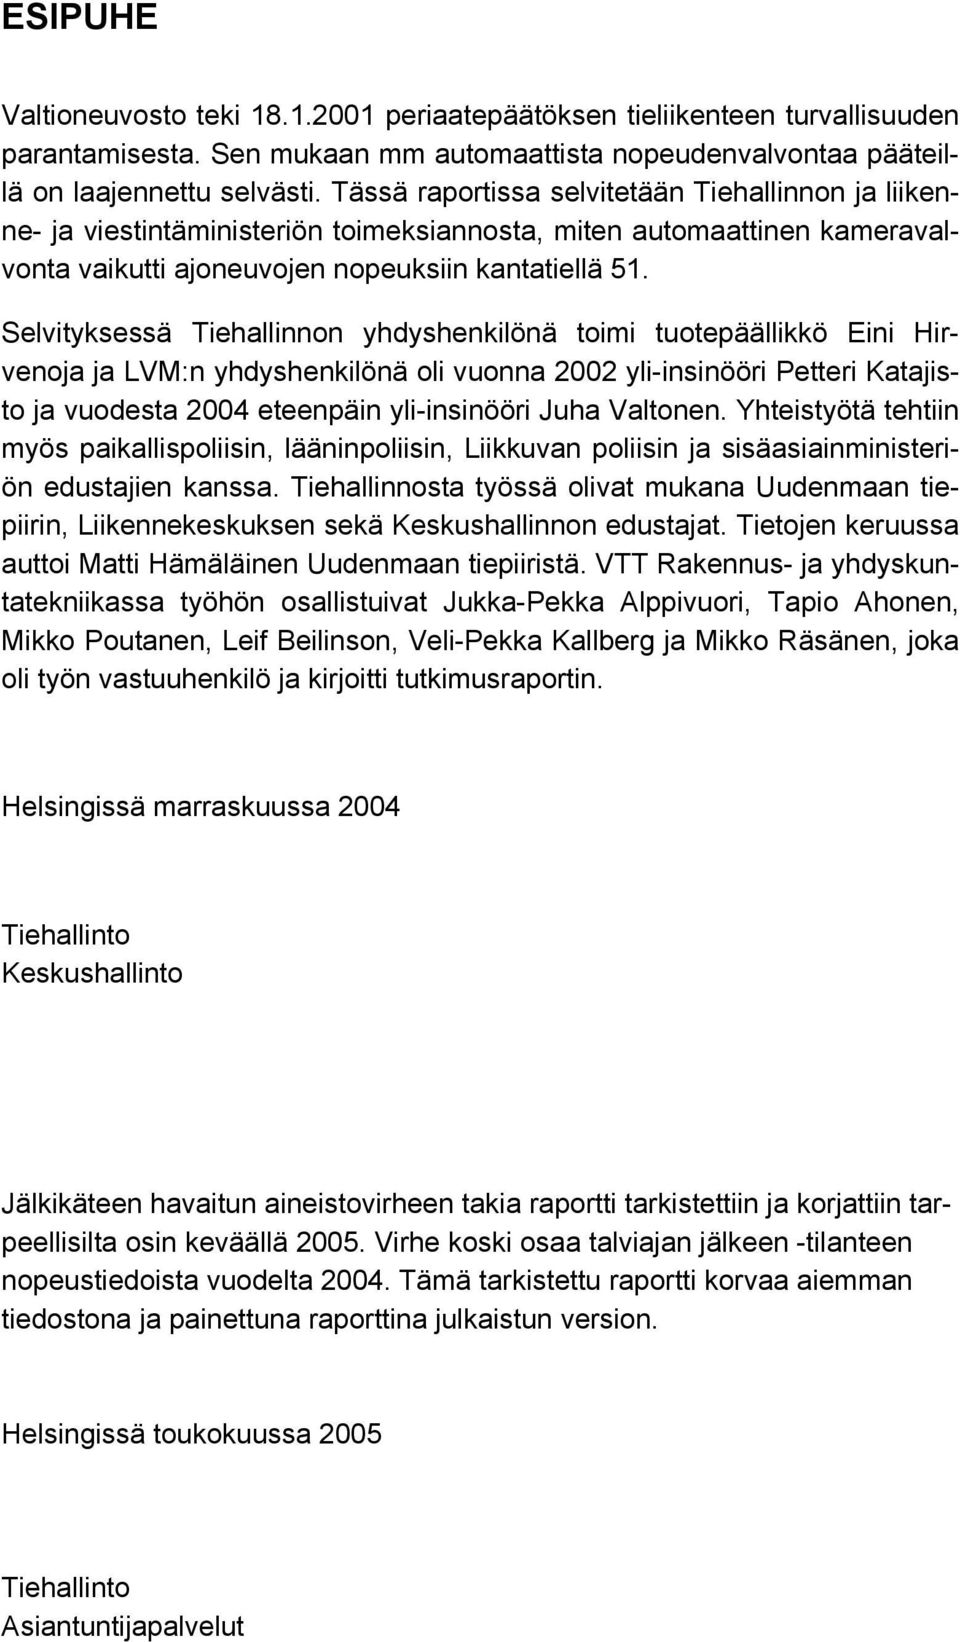 Selvityksessä Tiehallinnon yhdyshenkilönä toimi tuotepäällikkö Eini Hirvenoja ja LVM:n yhdyshenkilönä oli vuonna 2002 yli-insinööri Petteri Katajisto ja vuodesta 2004 eteenpäin yli-insinööri Juha